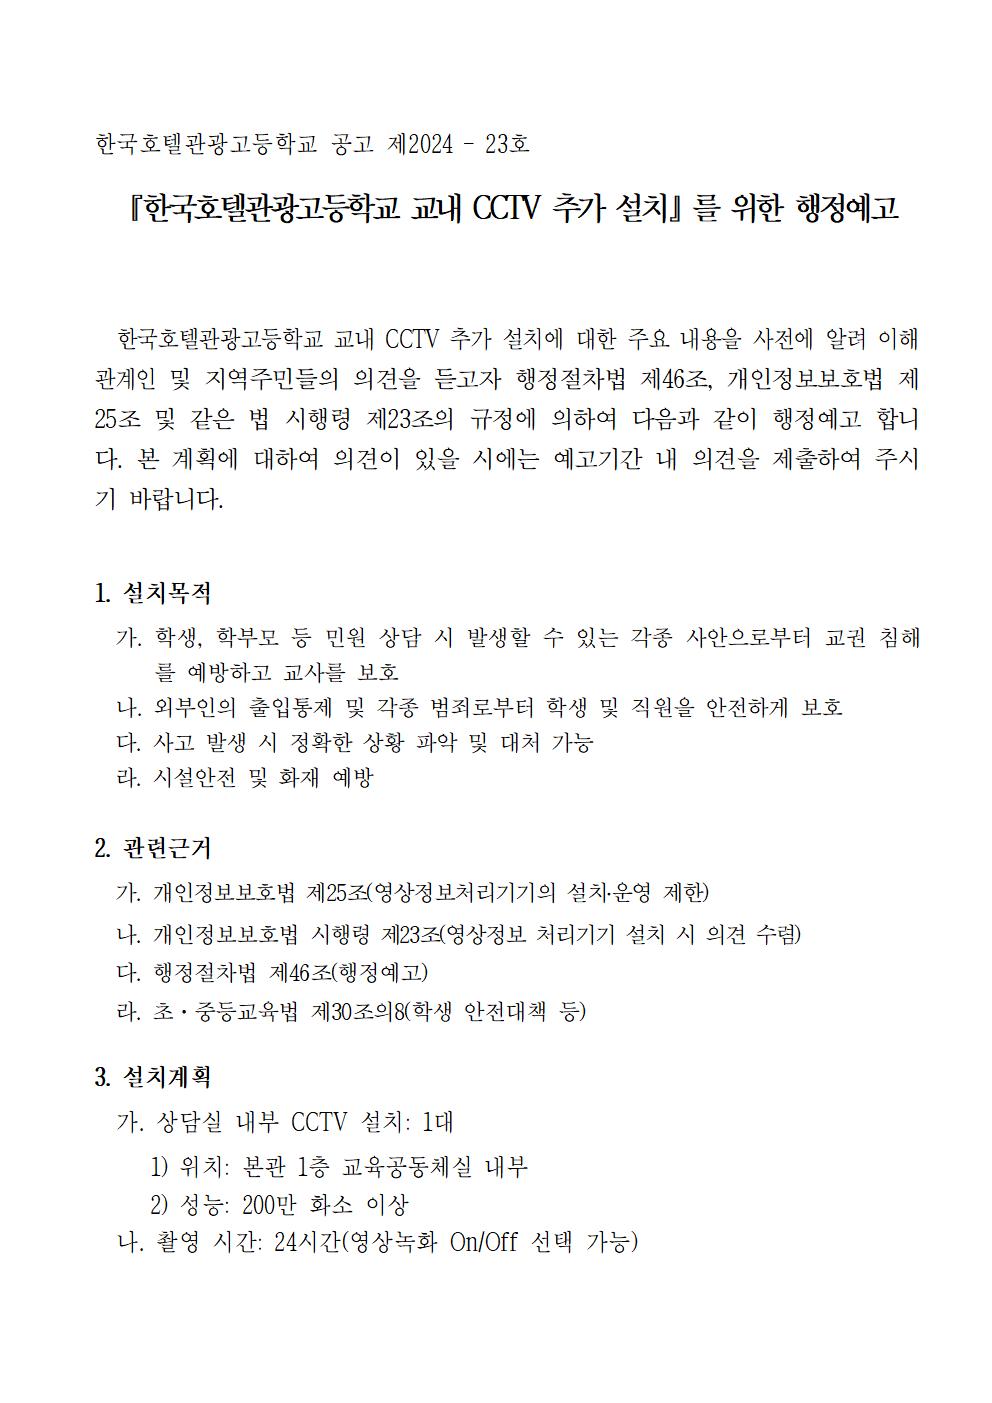 한국호텔관광고등학교 CCTV 추가 설치에 대한 행정예고문 및 의견제출서001